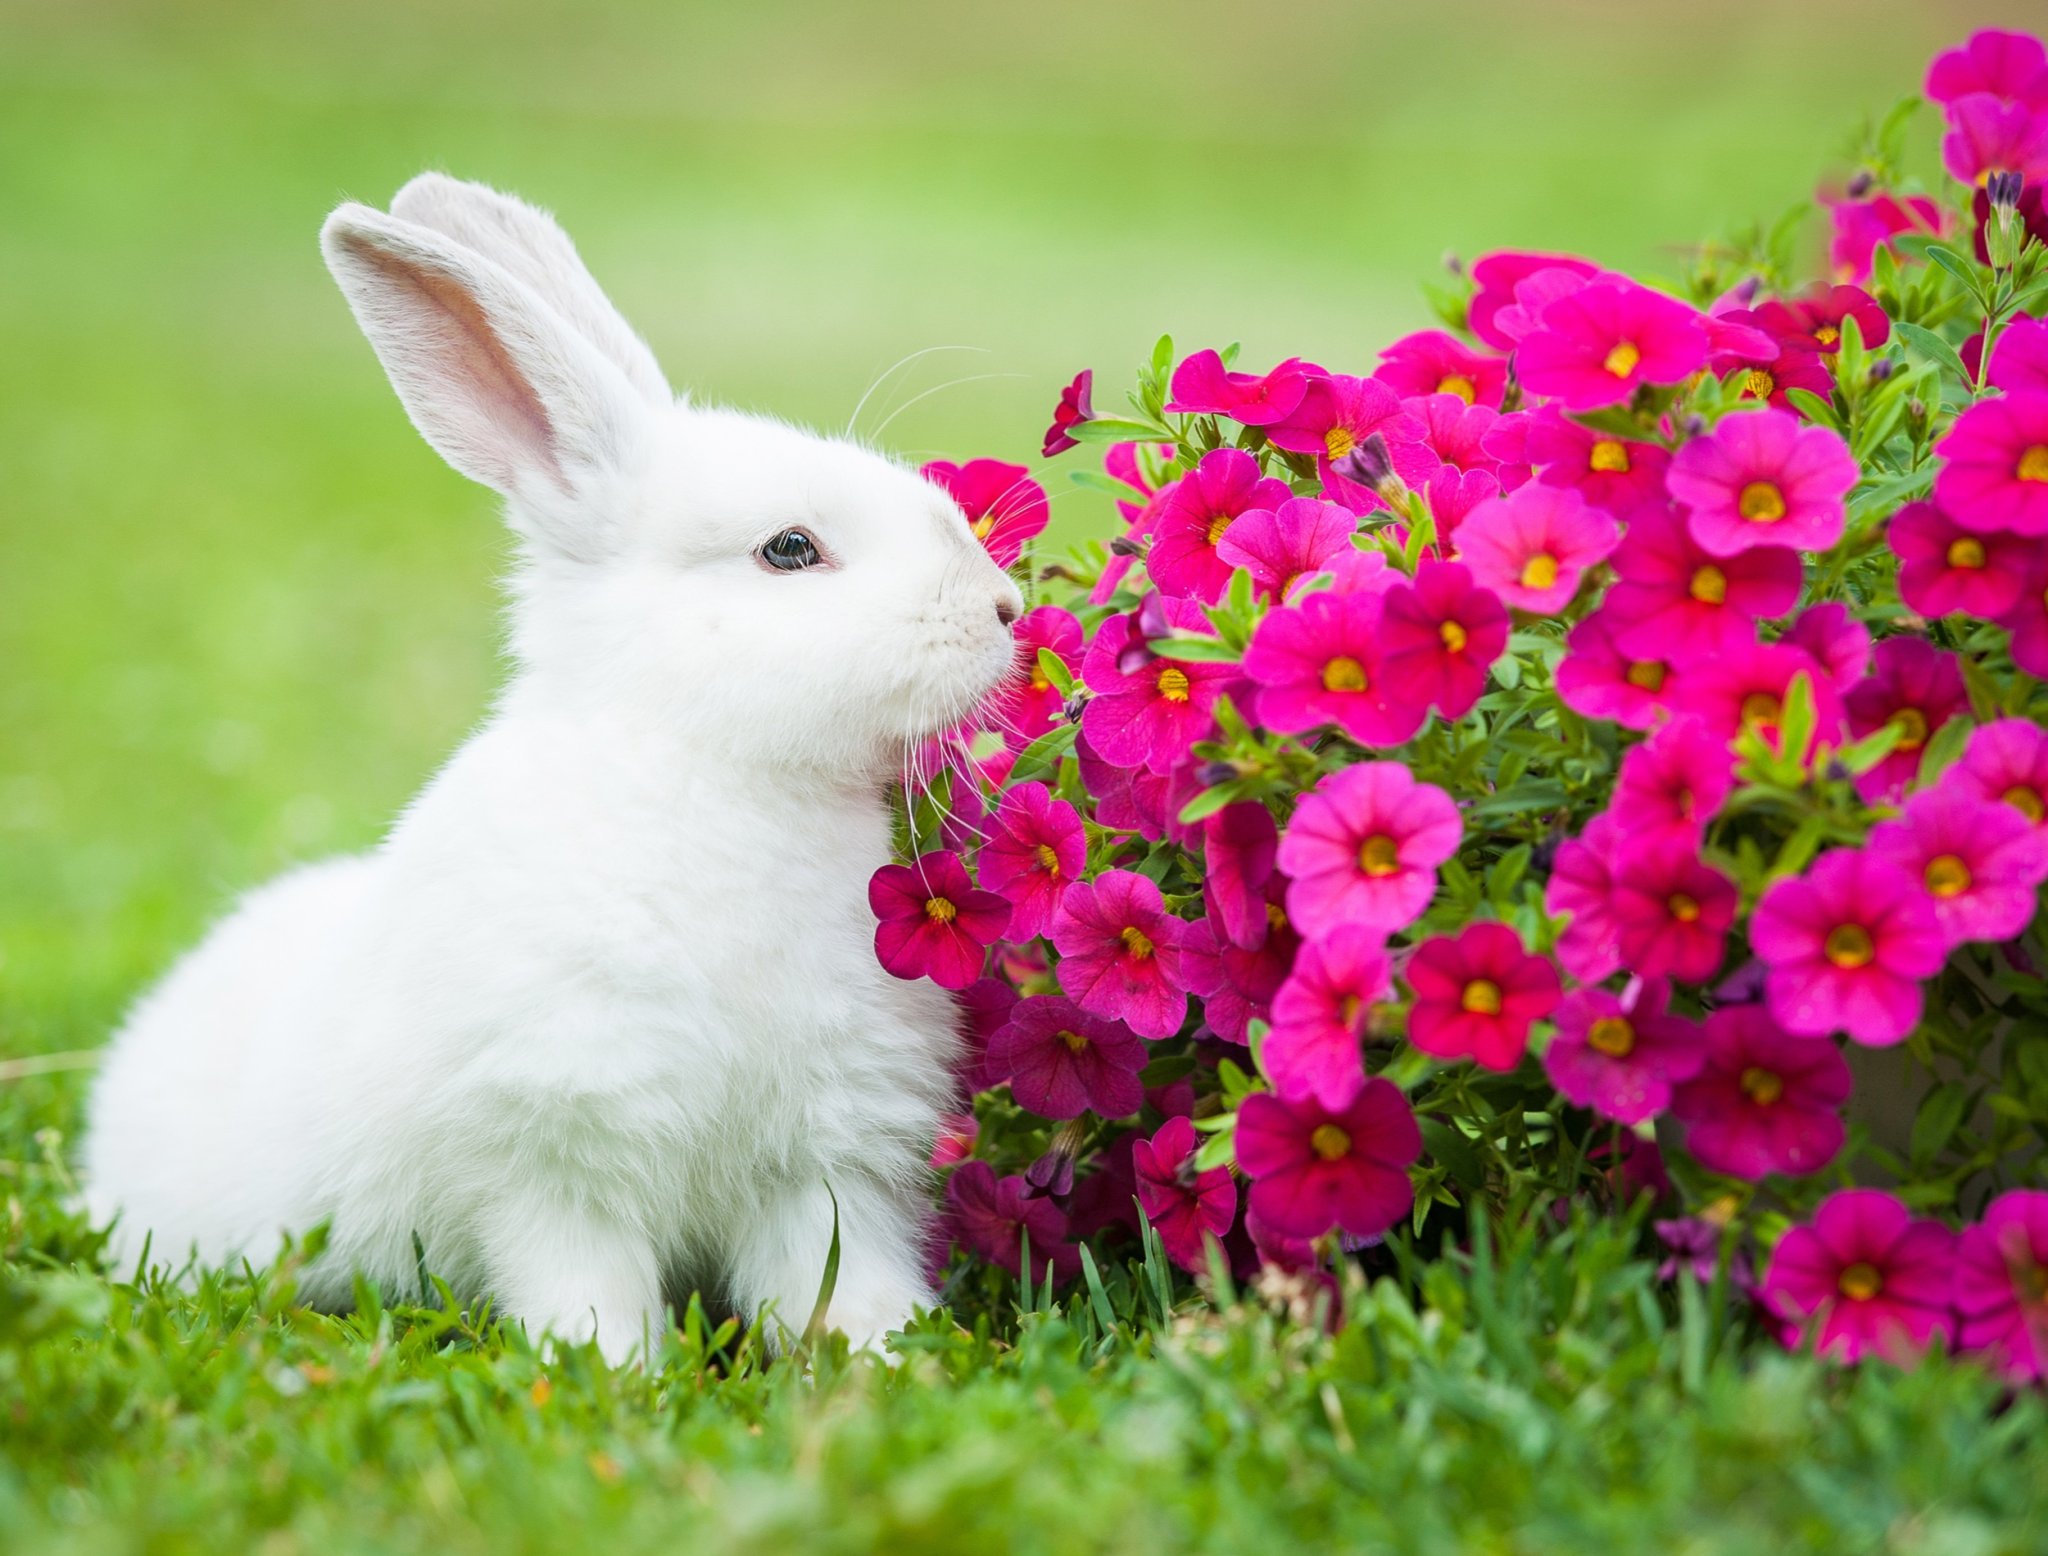 7 Plants That Repel Rabbits